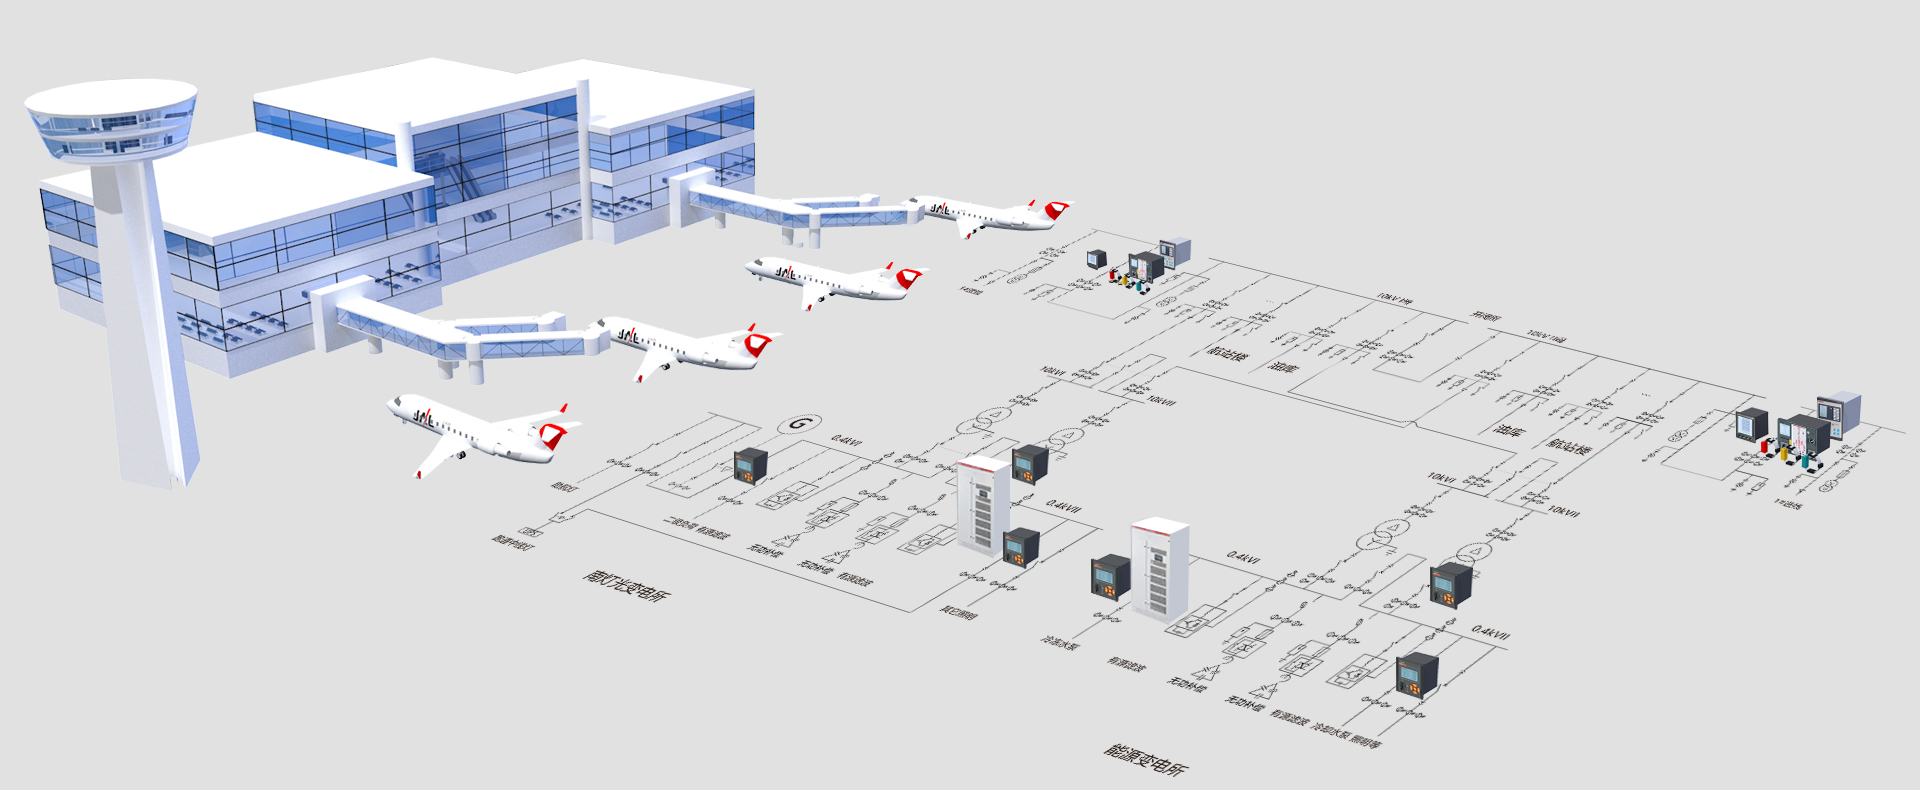 民航机场消防设备电源监控系统解决方案